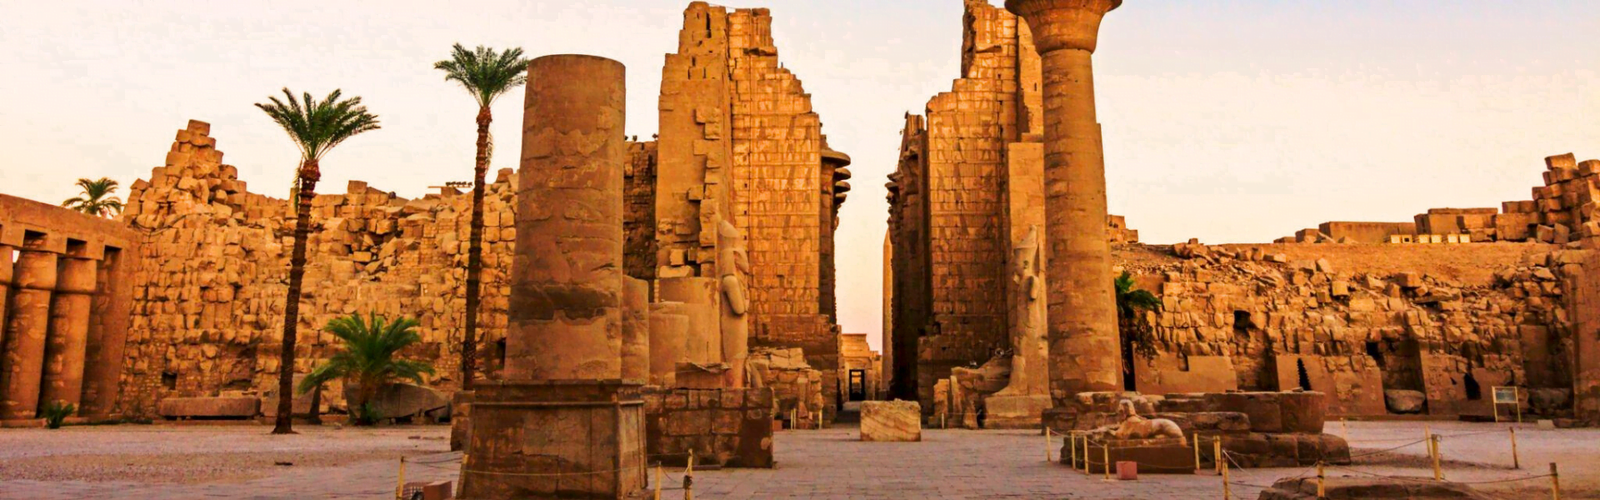 The Karnak Temple in Luxor, Egypt